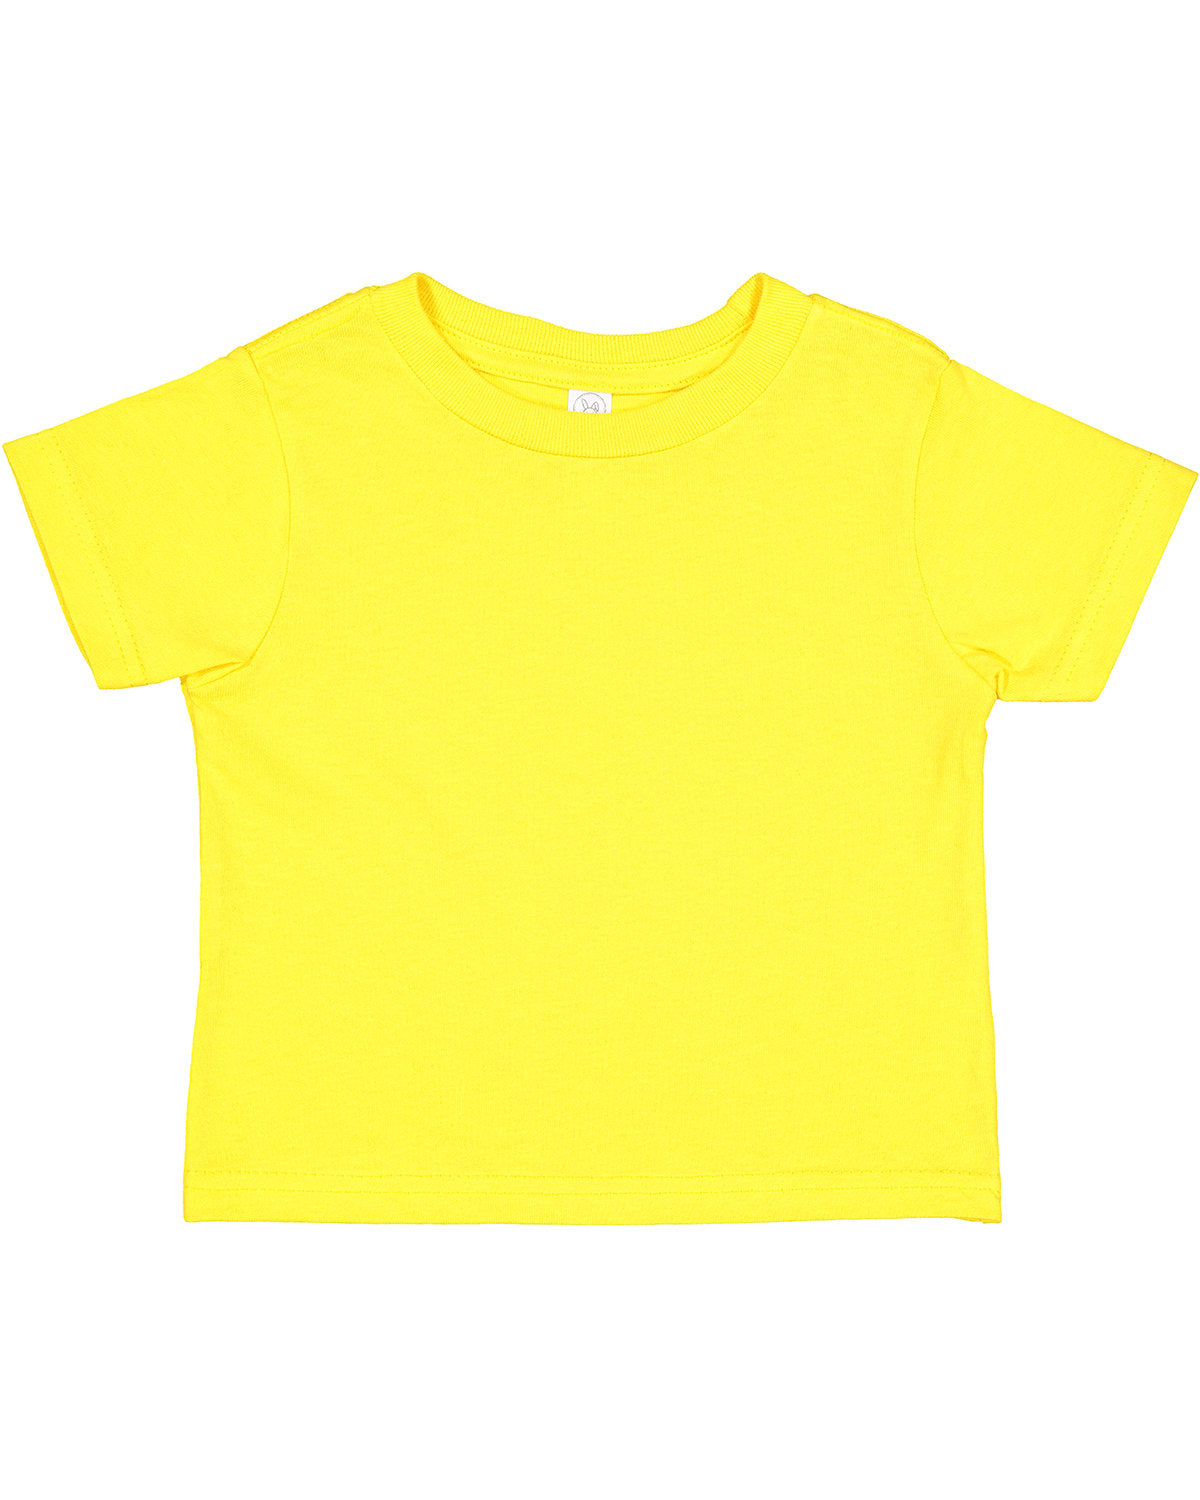 Rabbit Skins Toddler Cotton Jersey T-Shirt 2T / Yellow